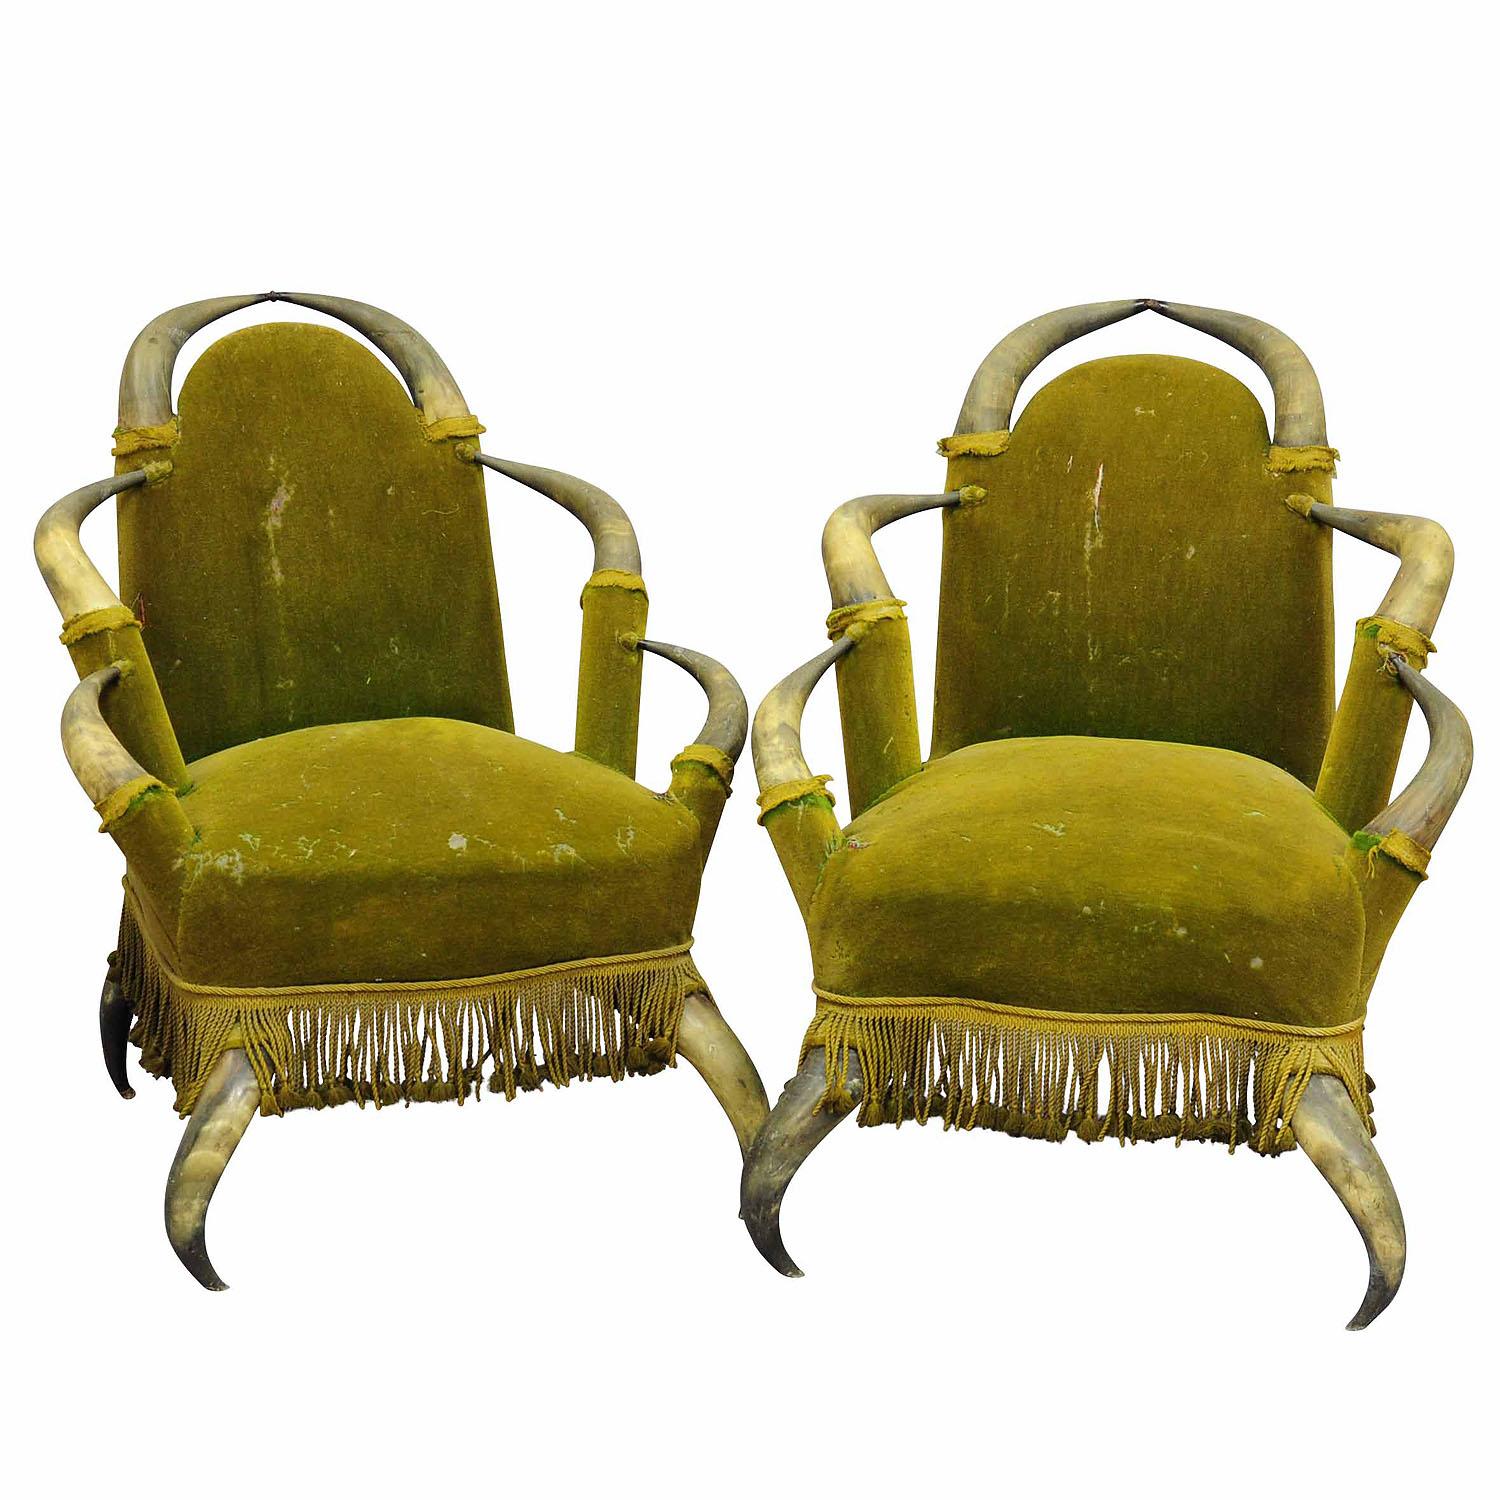 Paar antike Stiere Horn Stühle Österreich 1870

Ein Paar antike Stierhorn-Stühle, aus einer noblen Villa in Österreich. Die Sitze sind mit antikgrünem Samtstoff bezogen. Die Stühle sind in unrestauriertem Originalzustand, der Stoff muss erneuert